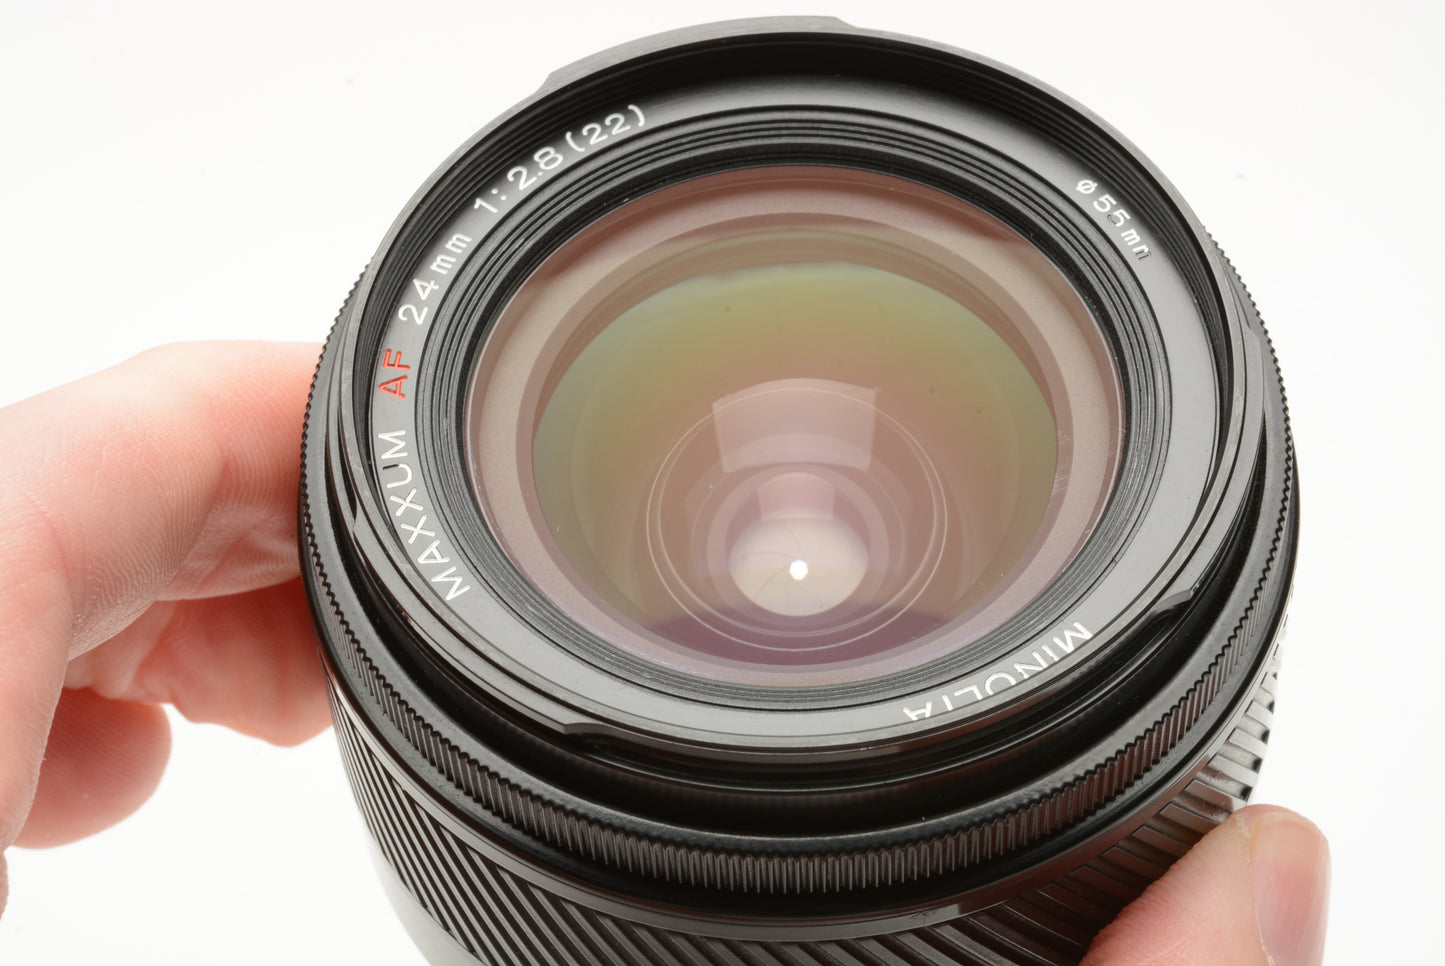 Minolta Maxxum AF 24mm f/2.8 Lens w/Caps